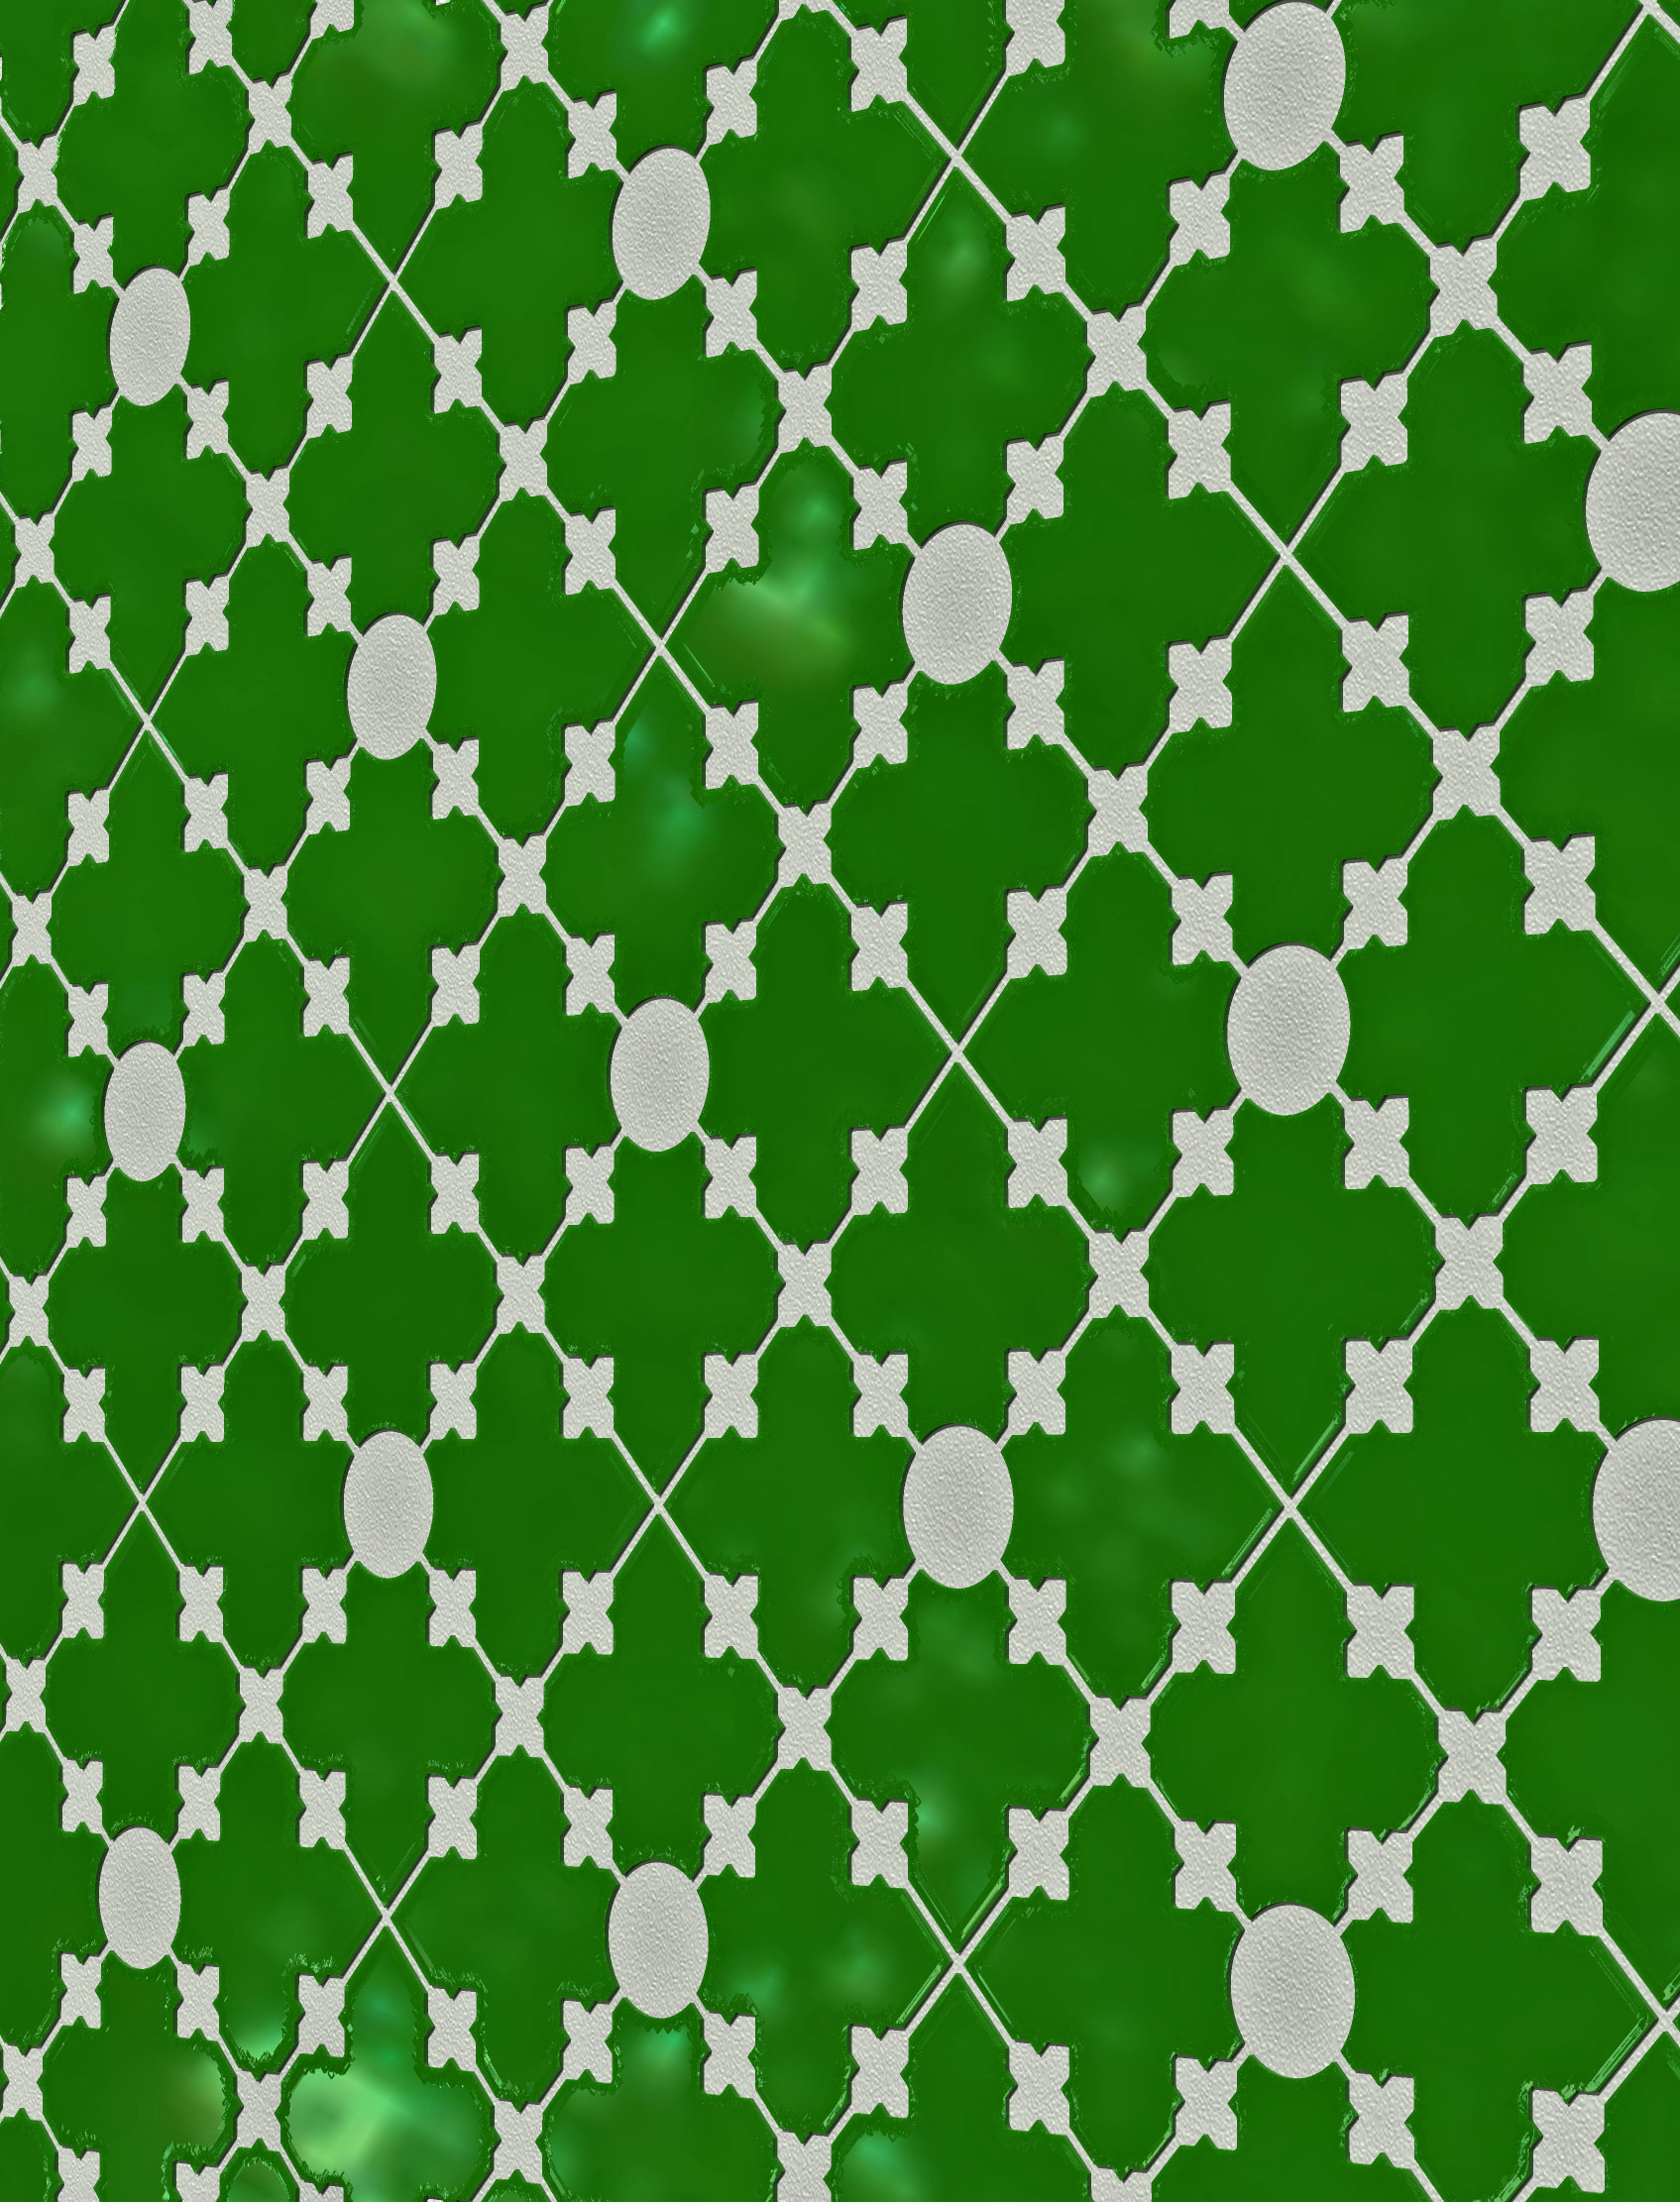 tile design, pattern design, tile pattern